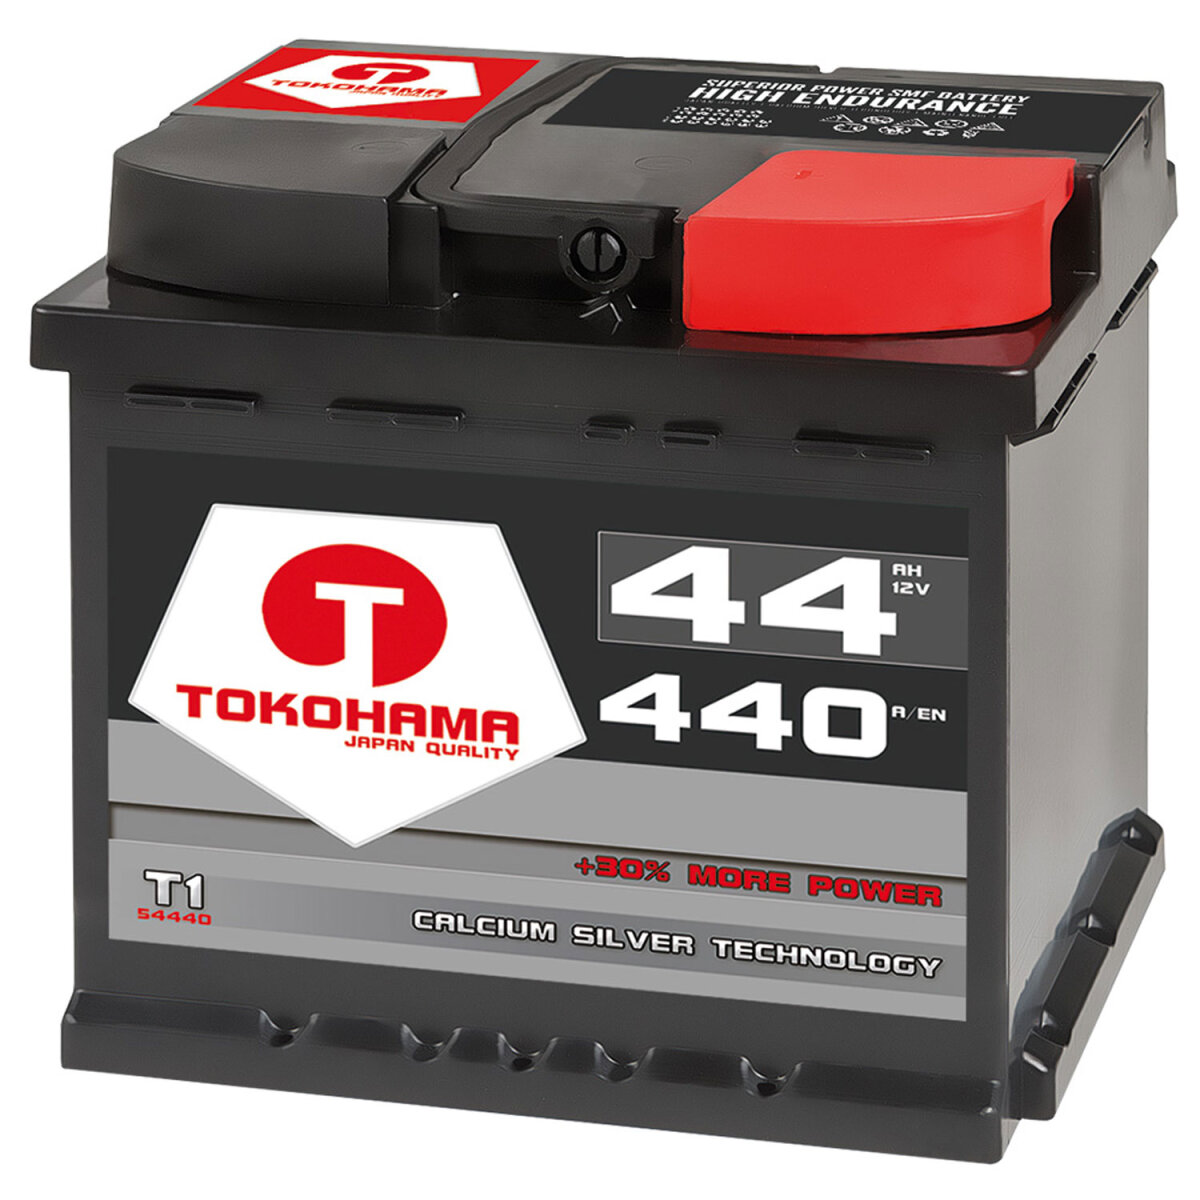 Tokohama Autobatterie 44AH 12V, 44,90 €